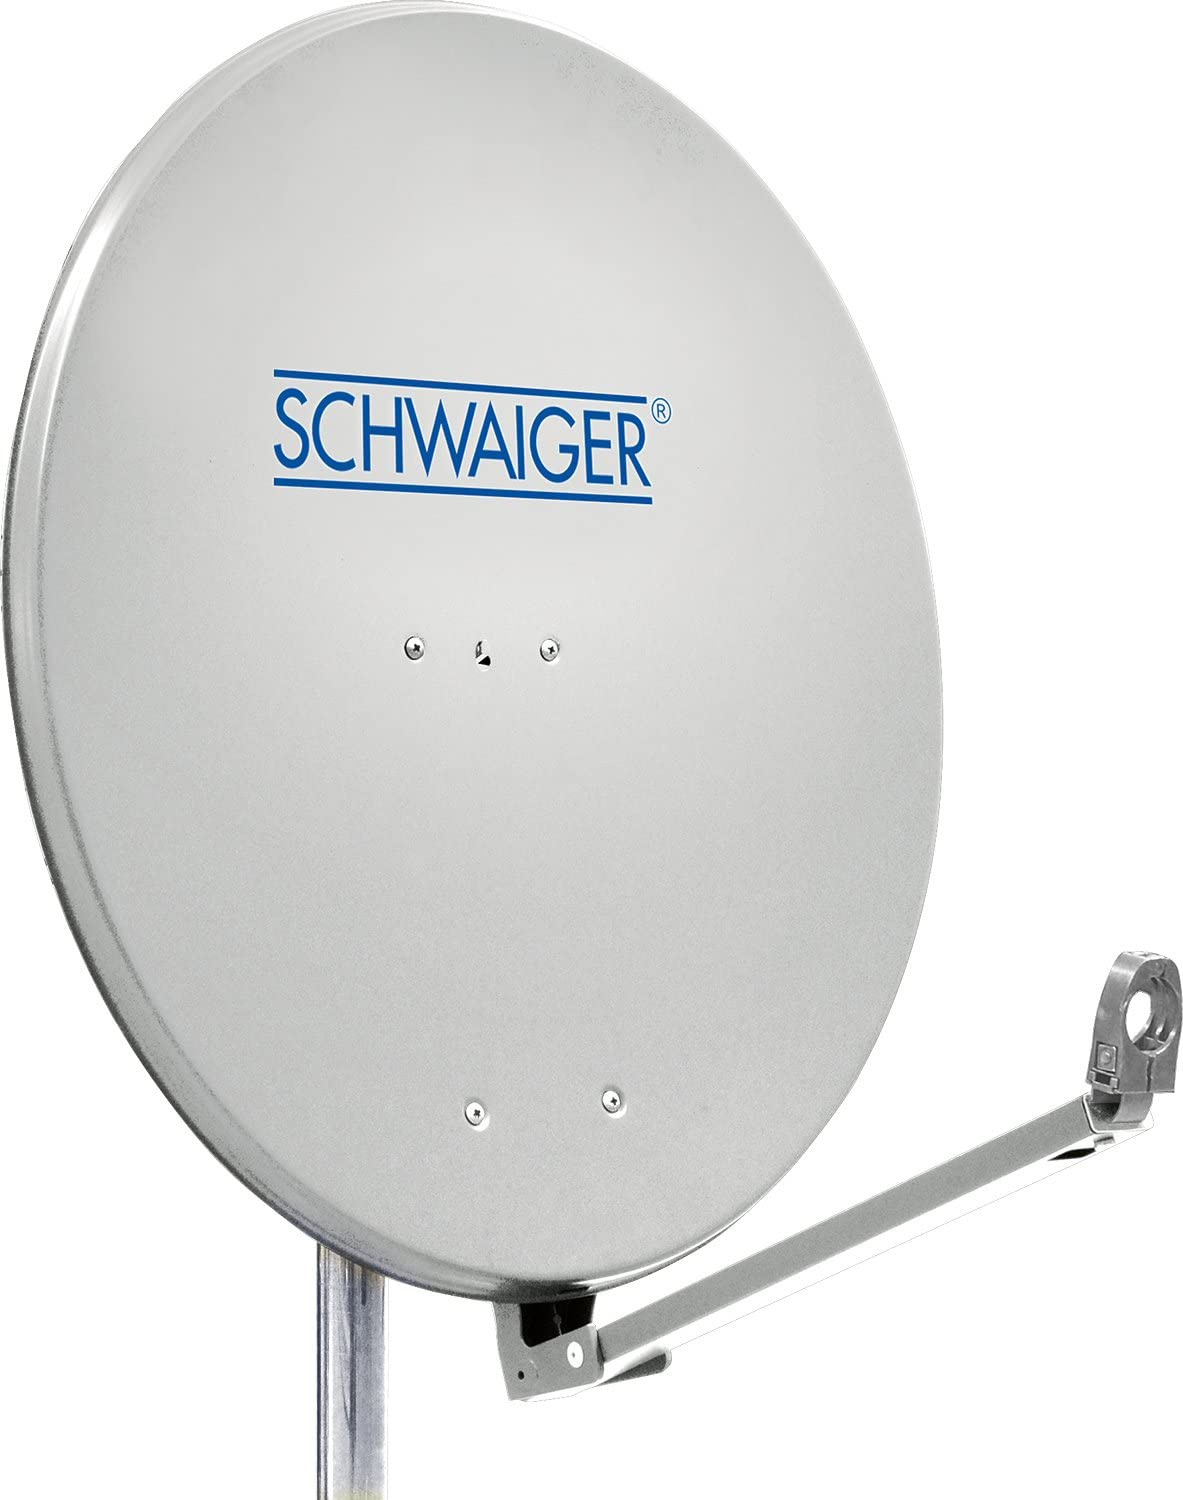 SCHWAIGER -SPI910.0- Aluminium Offset Antenne (Ø cm) 88